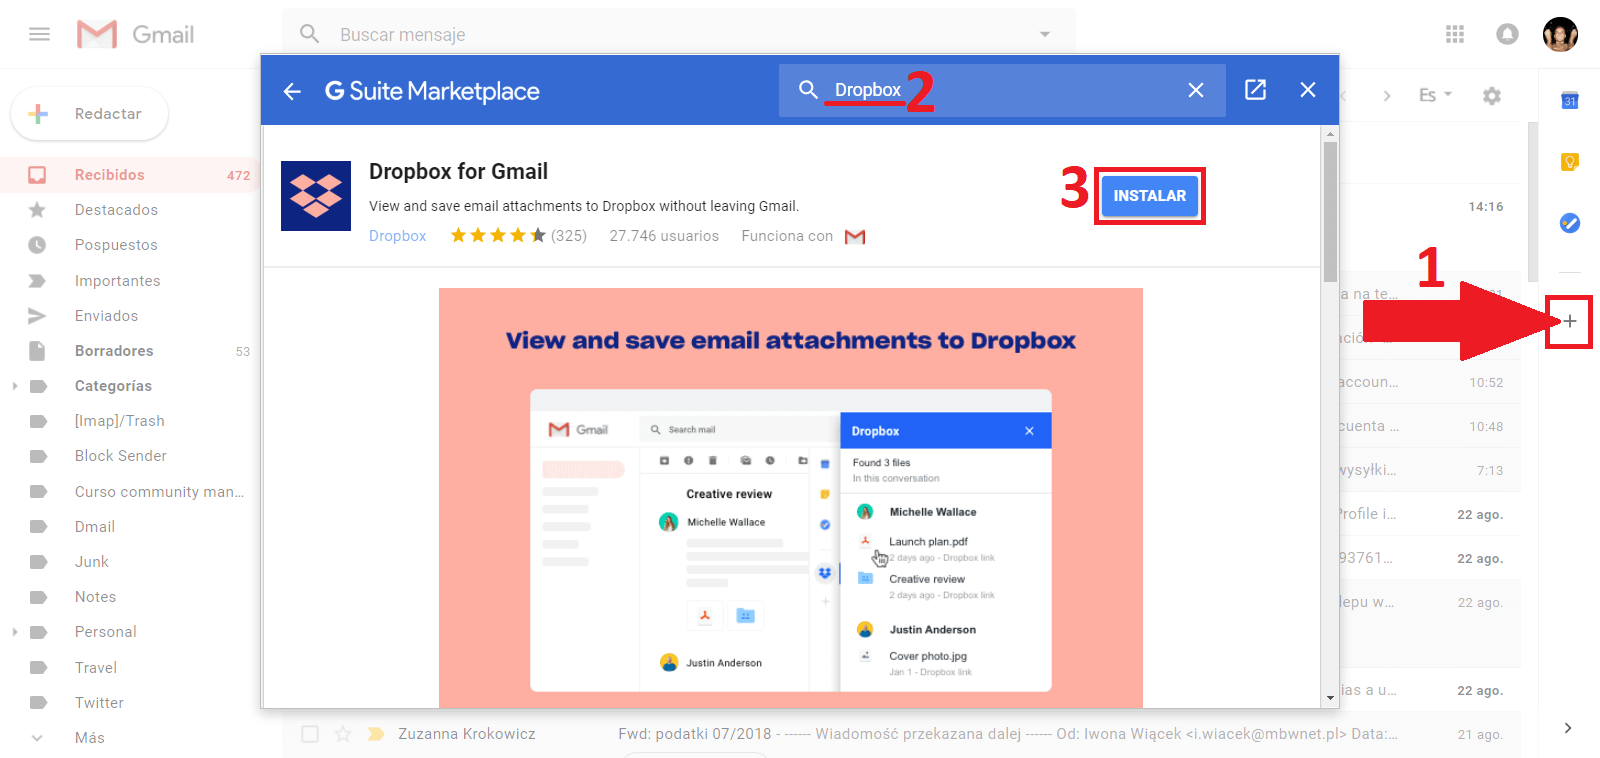 almacenar archivos adjuntos de gmail en dropbox